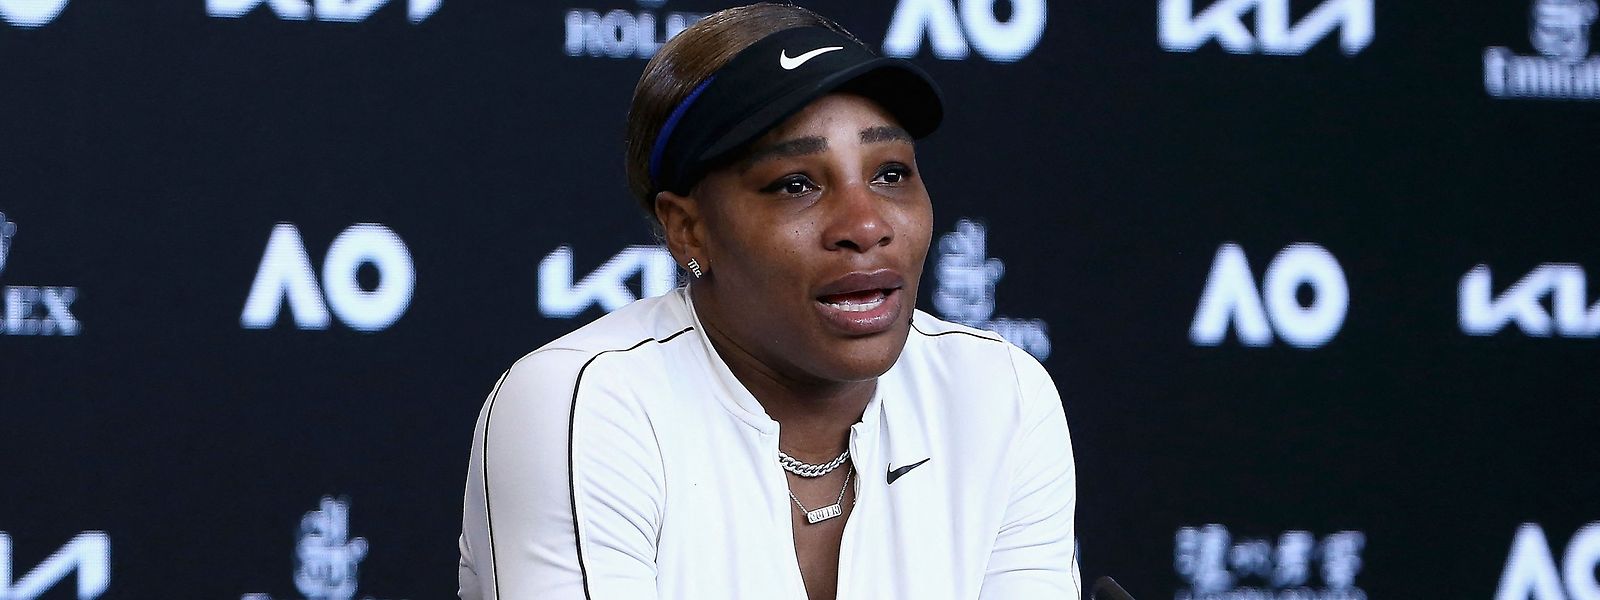 Für Serena Williams will es einfach nicht mit dem 24. Grand-Slam-Titel klappen.